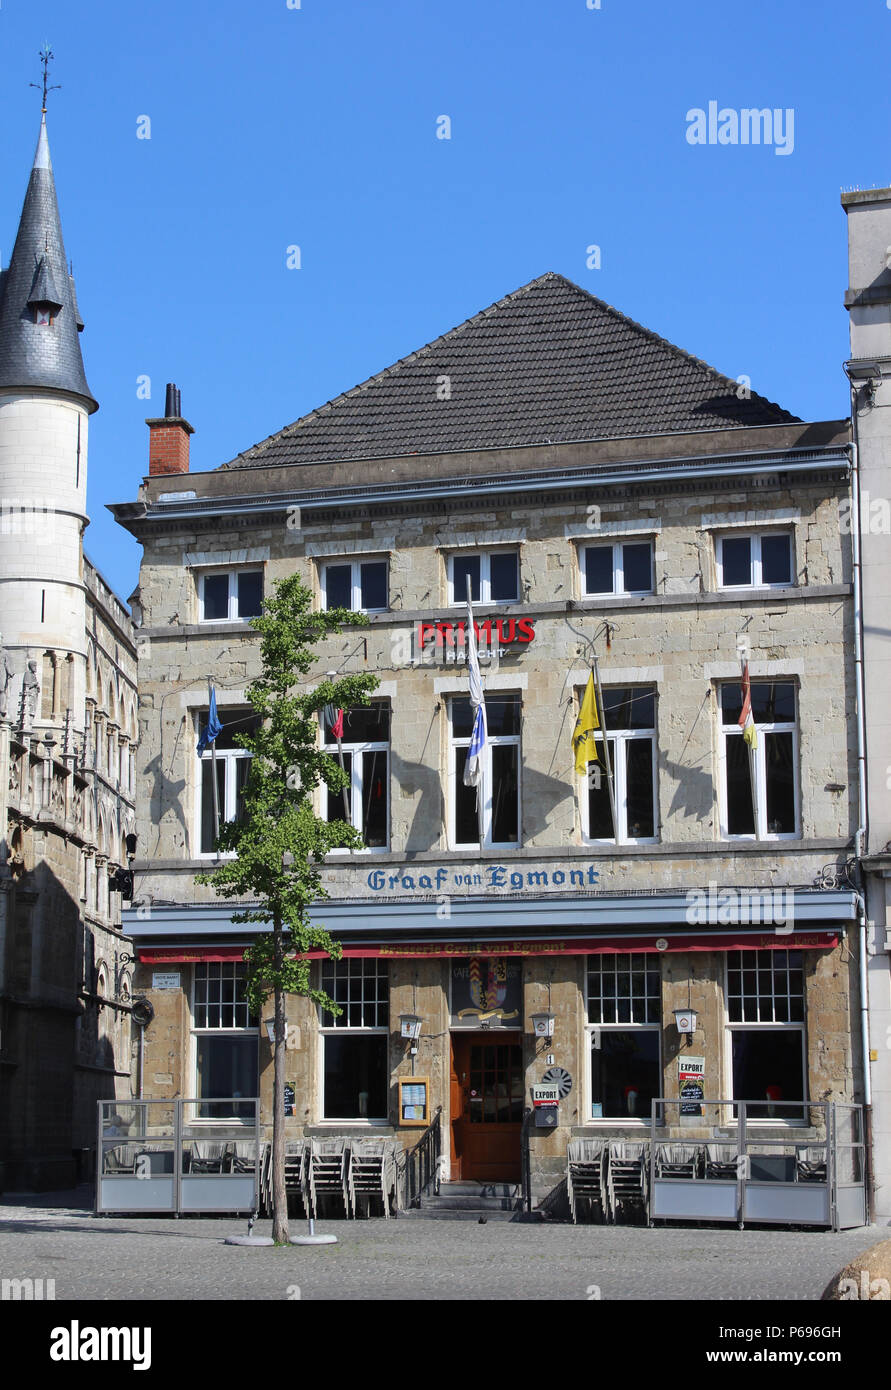 AALST, Belgio, 27 giugno 2018: Il Graaf van Egmont cafe e la brasserie, uno degli edifici storici trovati sul Grote Markt di Aalst. Dating da th Foto Stock